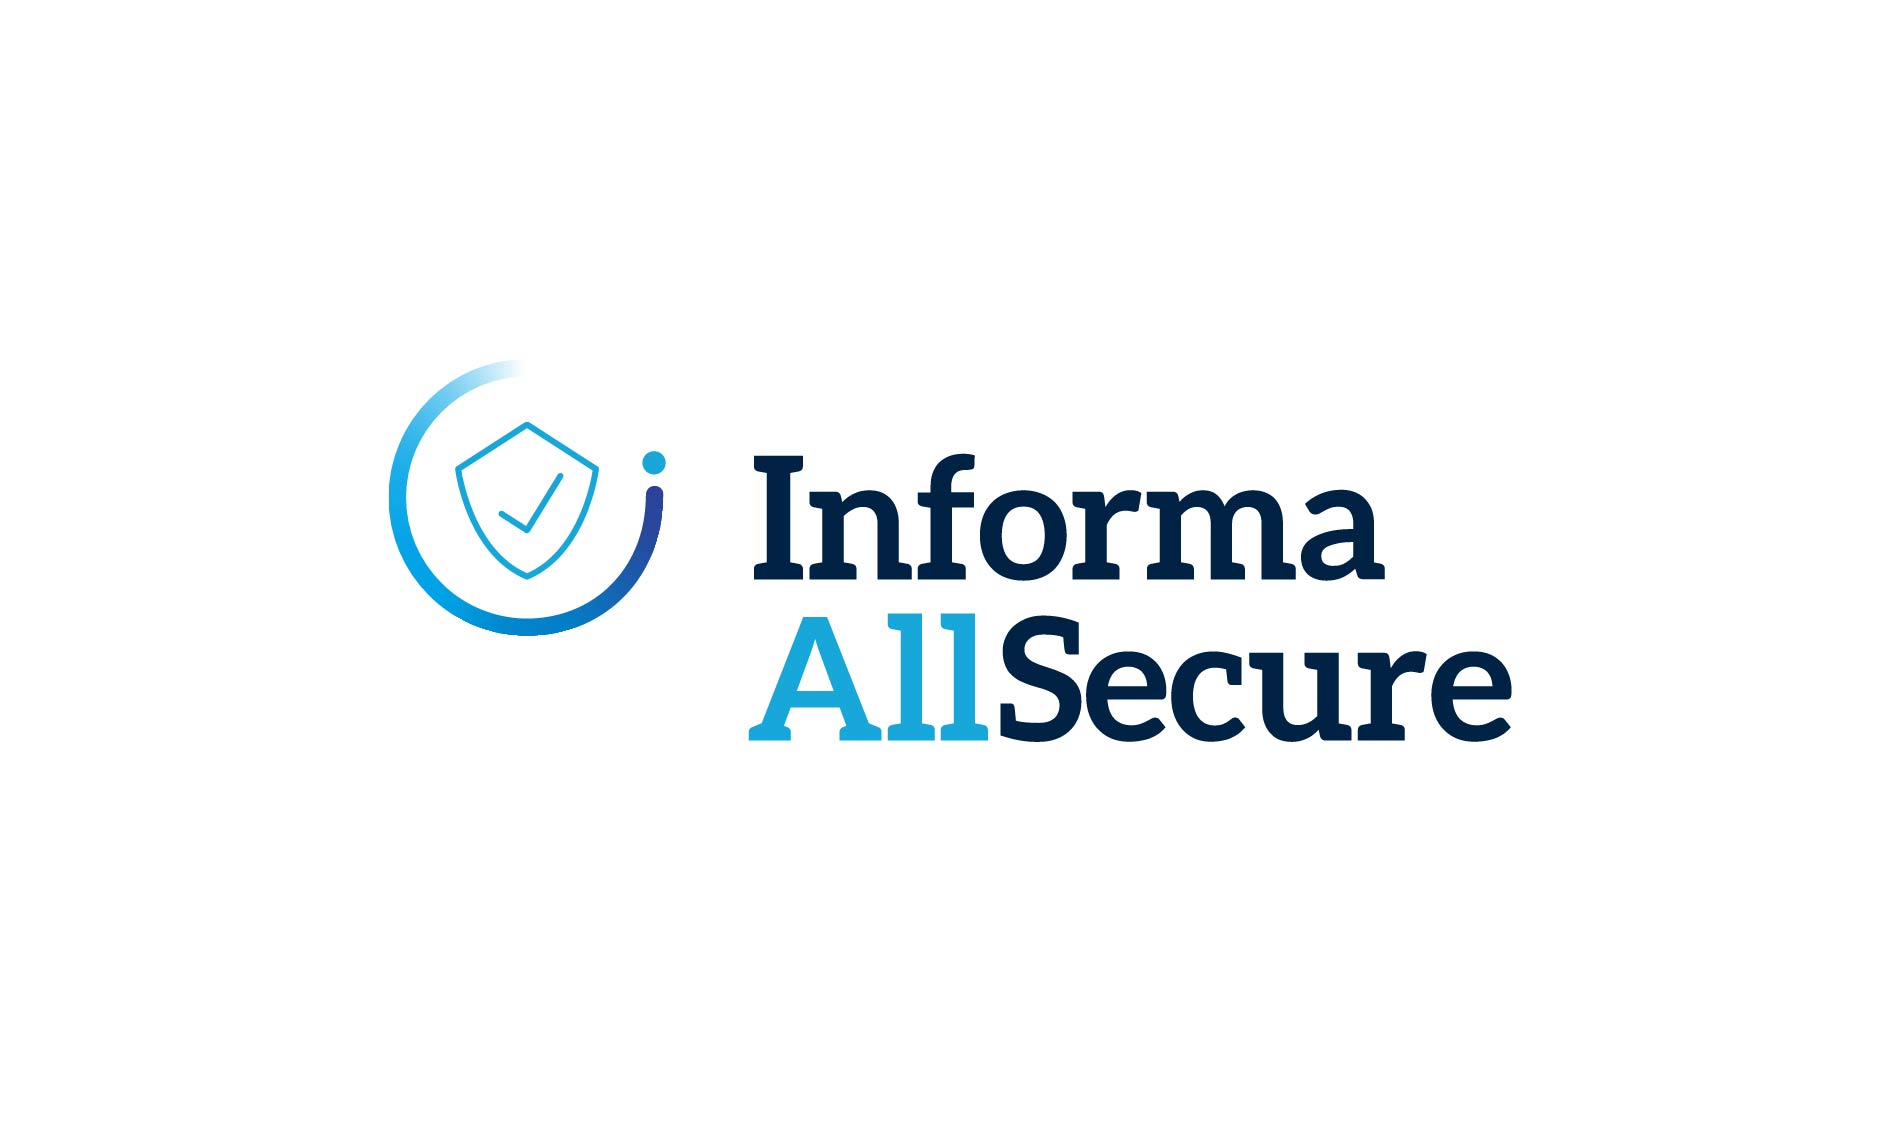 Informa Allsecure logo